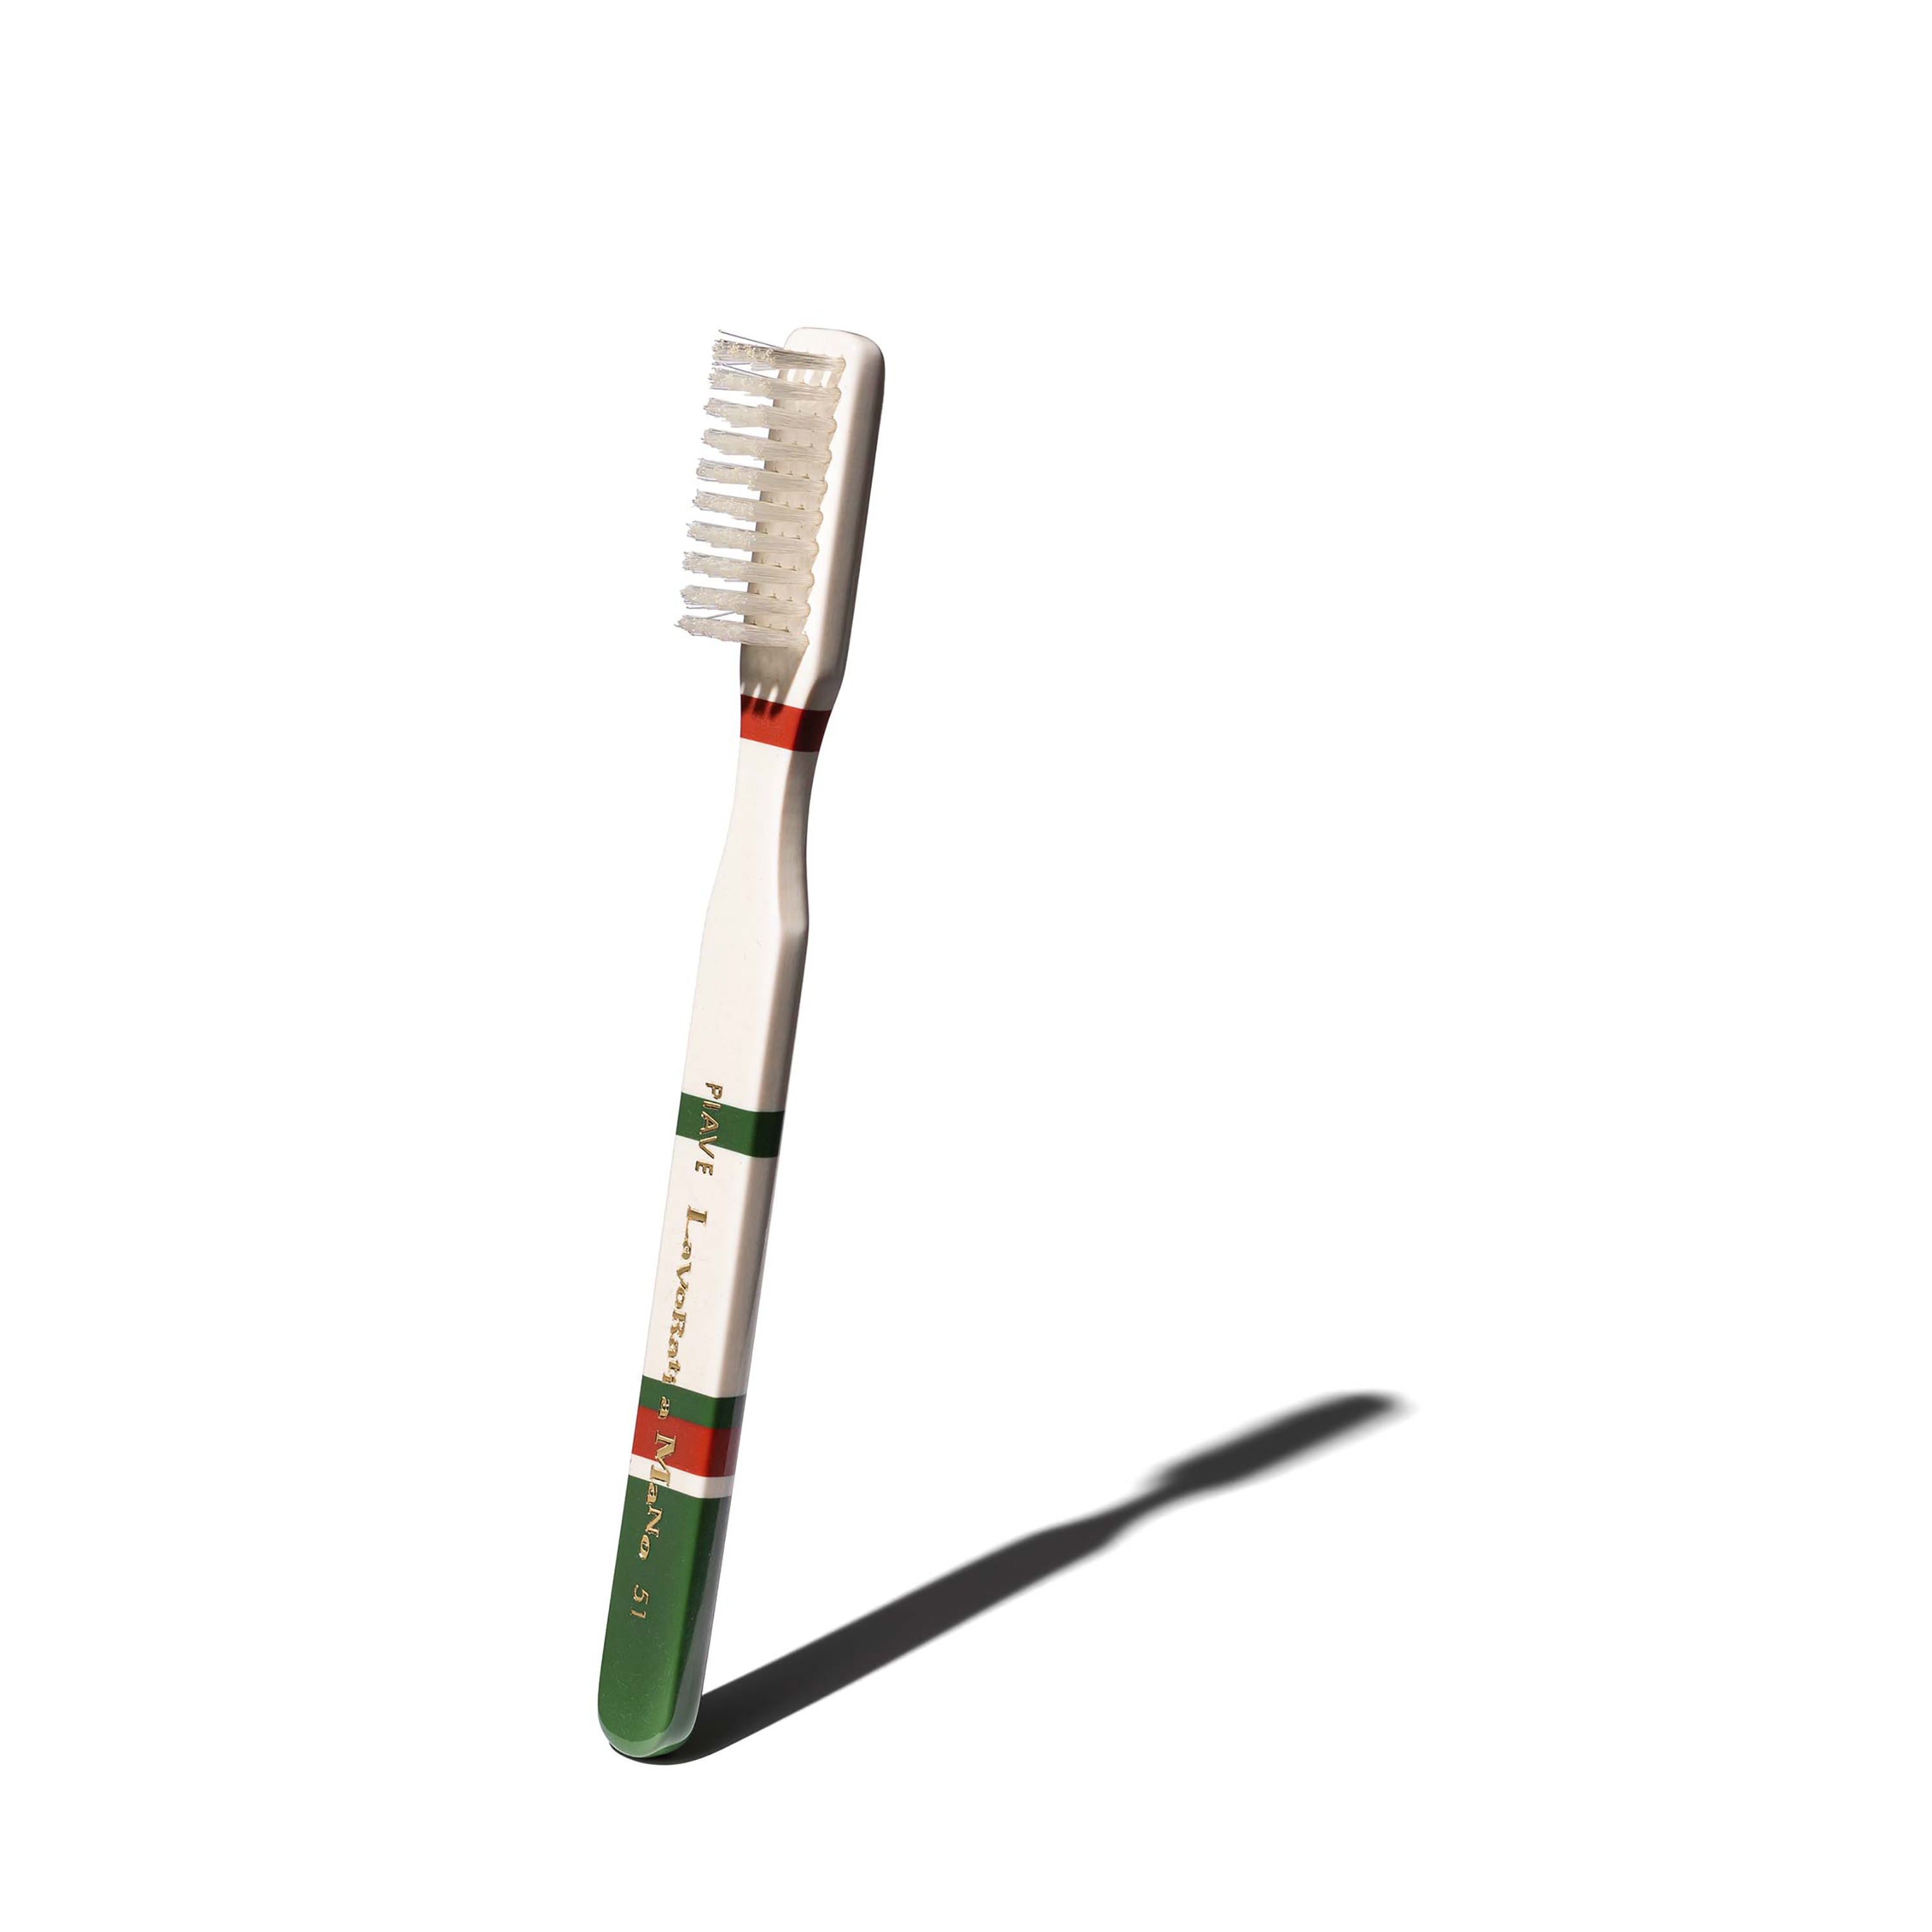 Torino toothbrush